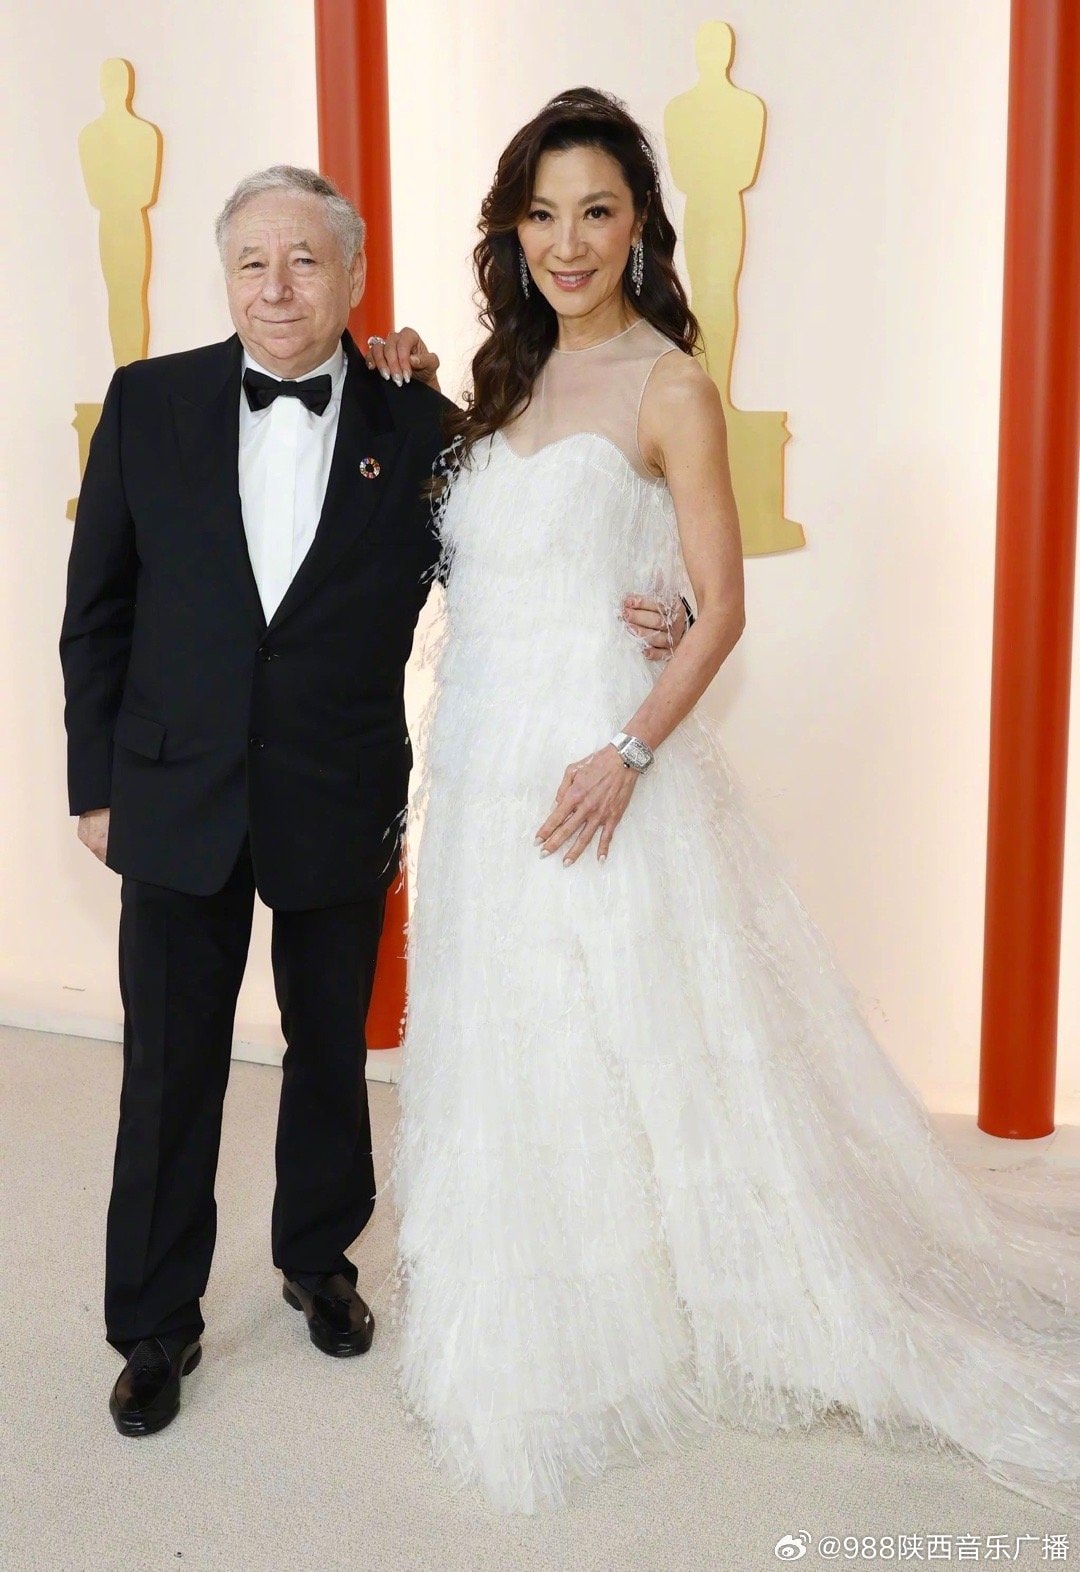 “Ảnh hậu Oscar” Dương Tử Quỳnh chính thức cưới tỷ phú người Pháp hơn 16 tuổi, sau 19 năm tổ chức hôn lễ giản dị bất ngờ - Ảnh 6.